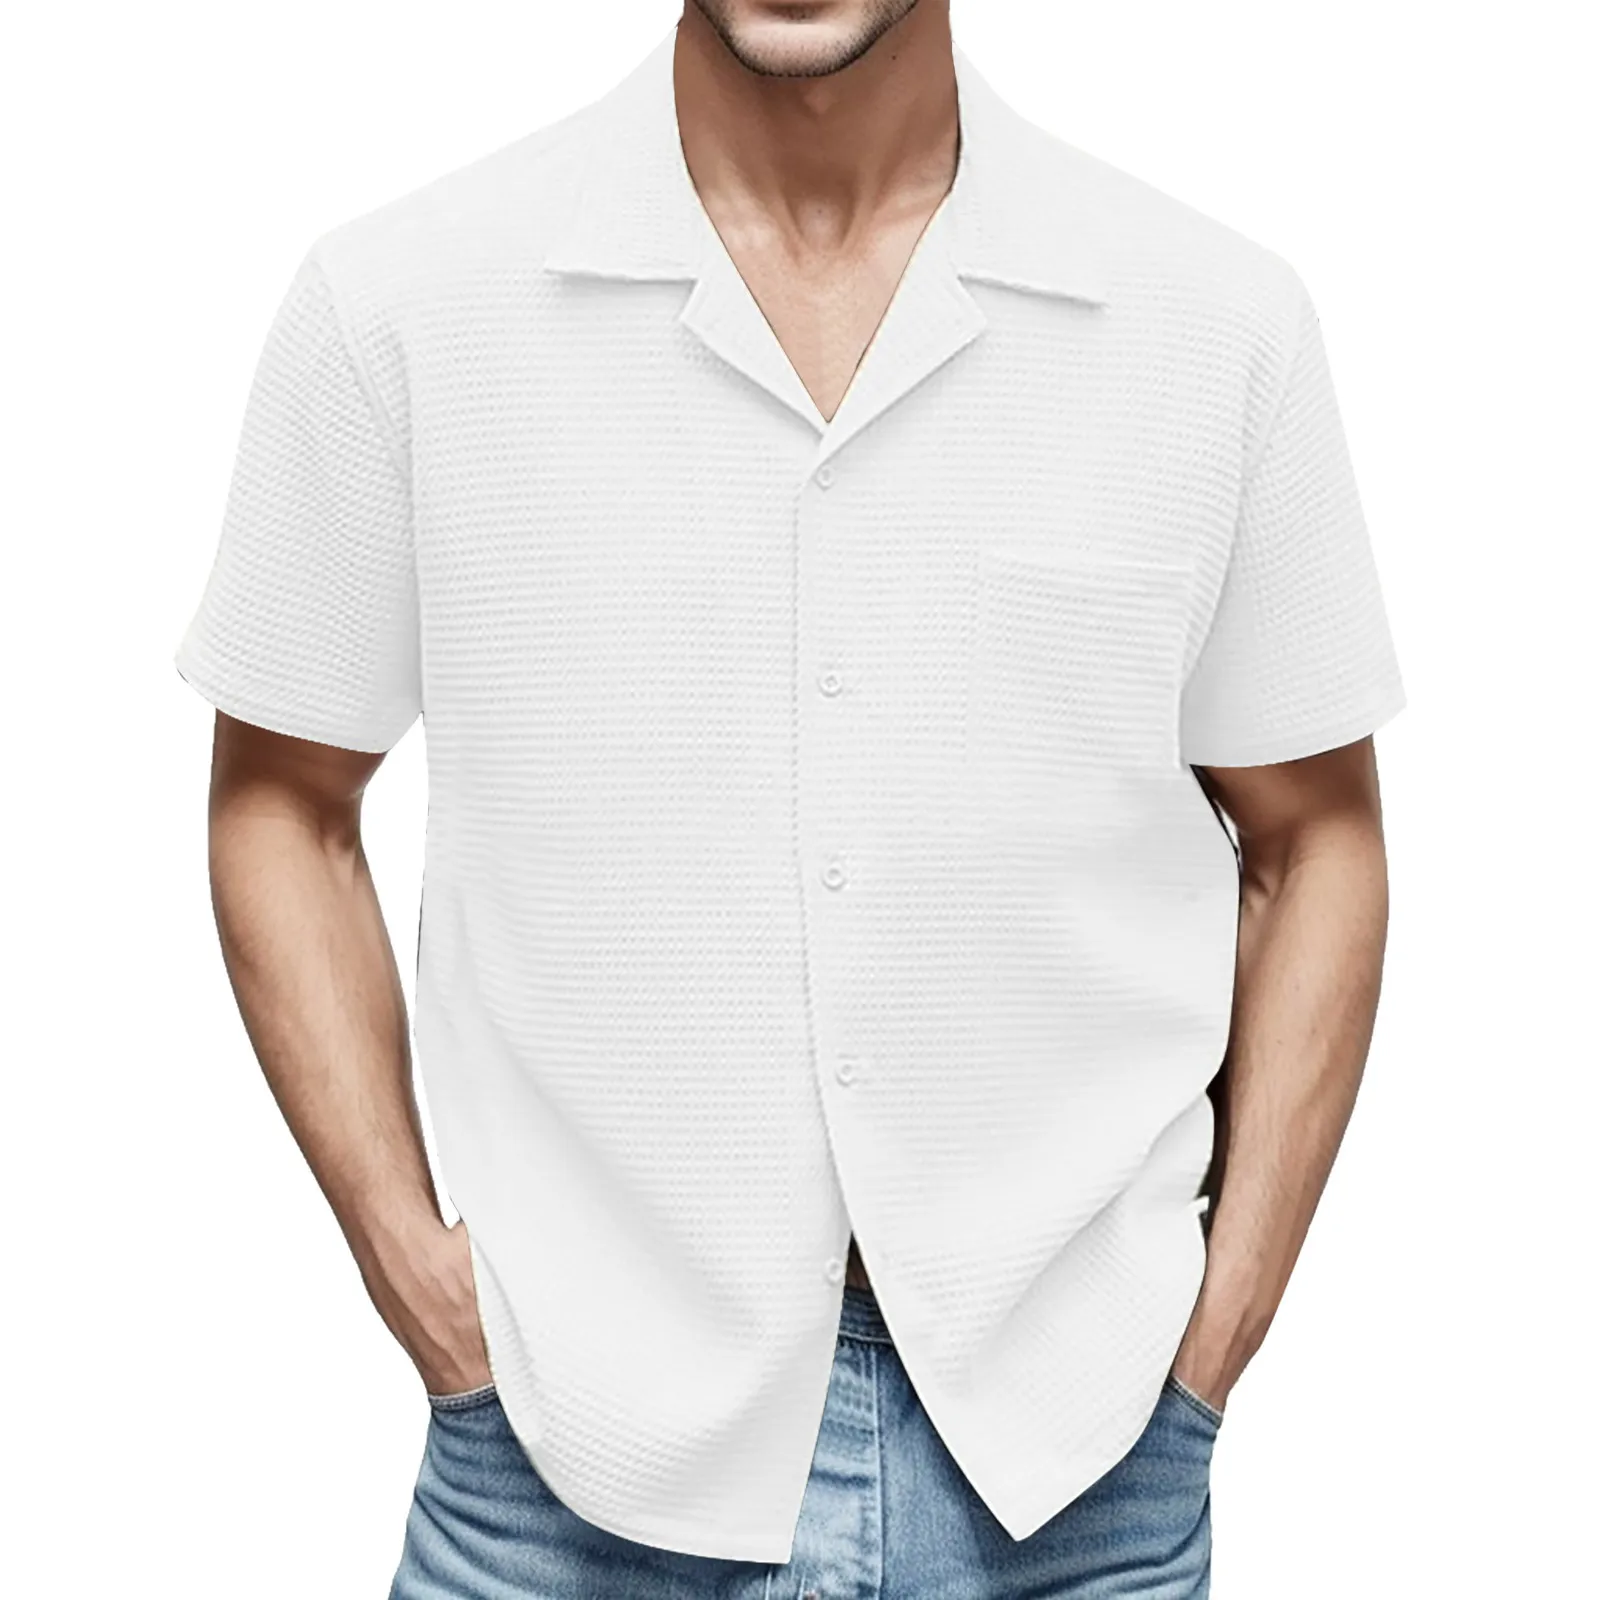 

Мужская однобортная рубашка с карманами, голубая вафельная рубашка с короткими рукавами, отложным воротником и карманами, кардиган для отдыха на лето 2019